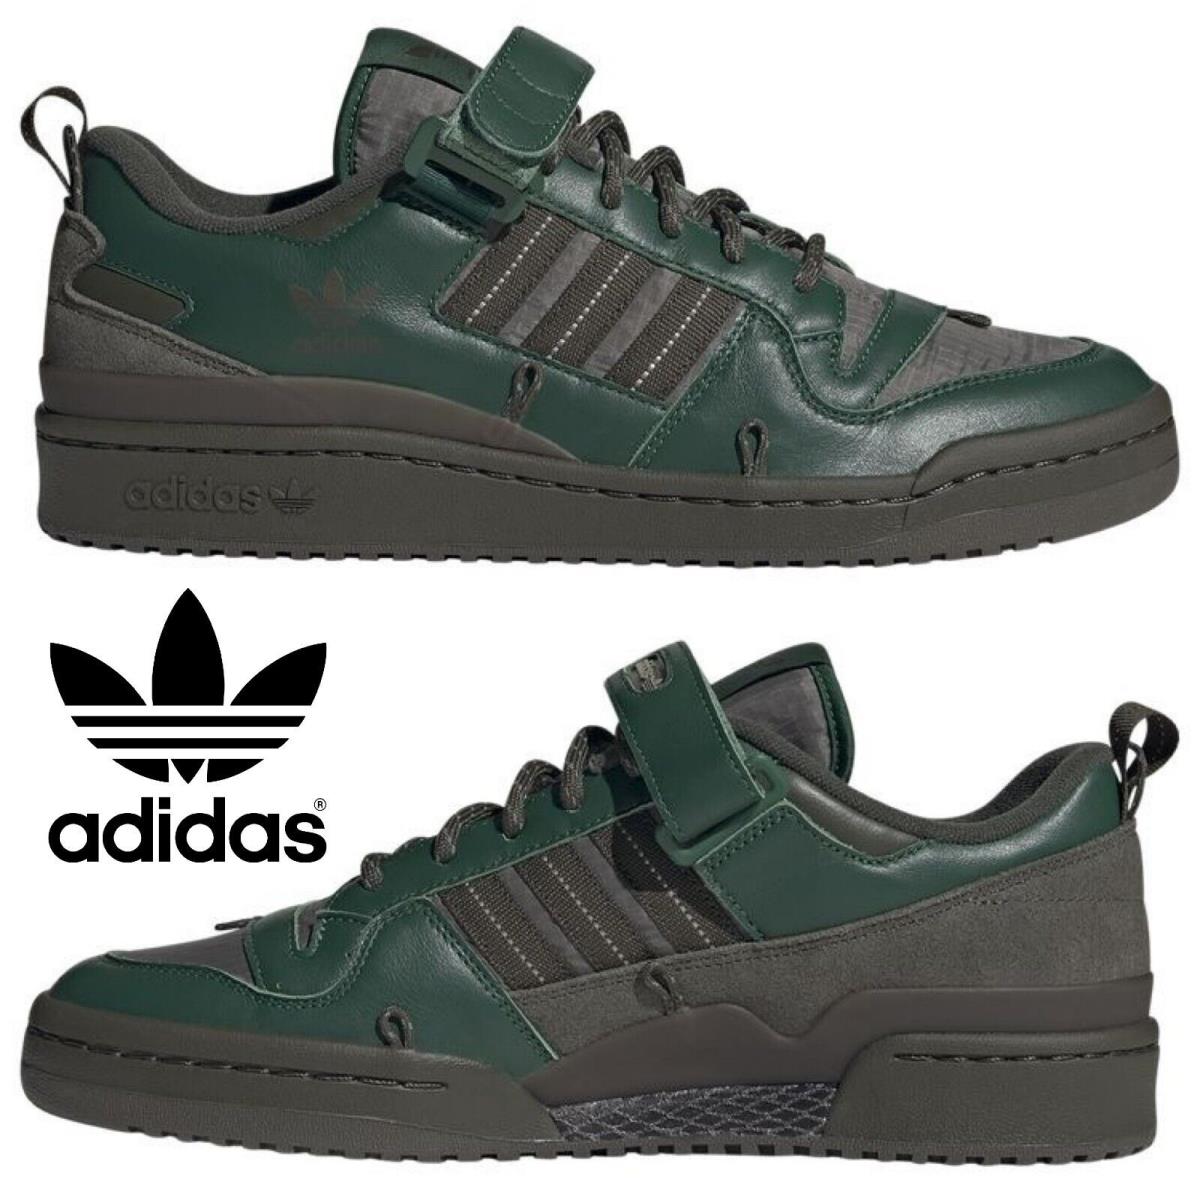 Adidas Originals Forum 84 Low Men`s Sneakers Comfort Sport Casual Shoes Green